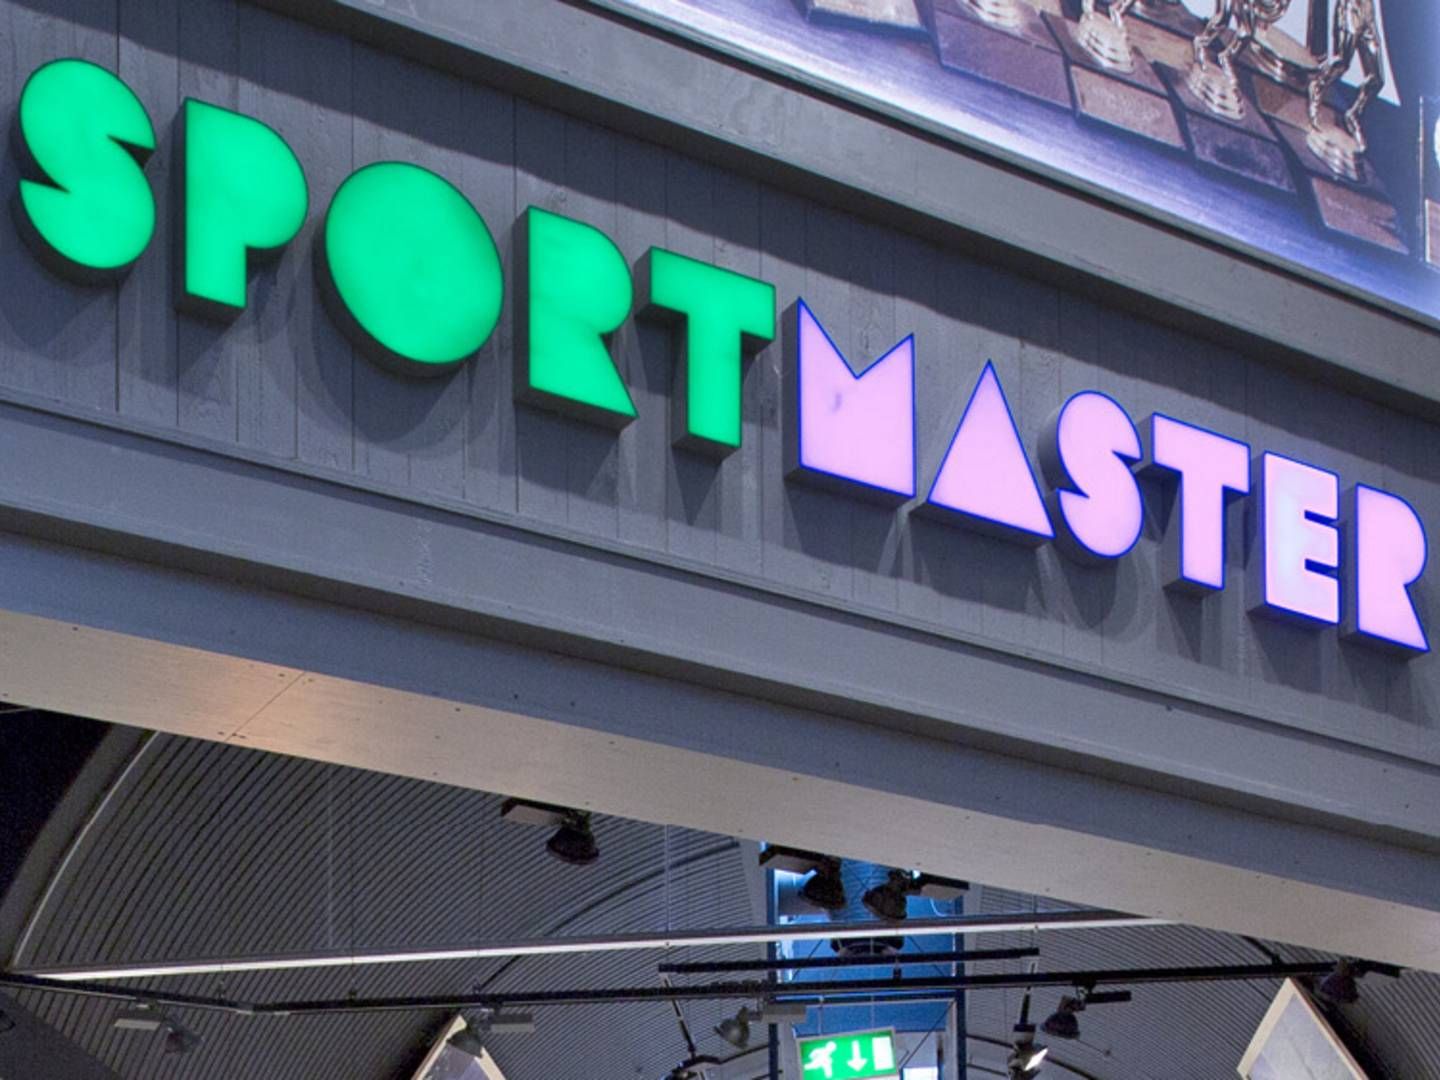 Sportmasters omdiskuterede ejere satte Sportmaster i Darnmark til salg - kort efter et salg i Polen var sat i gang | Foto: PR/Sportmaster